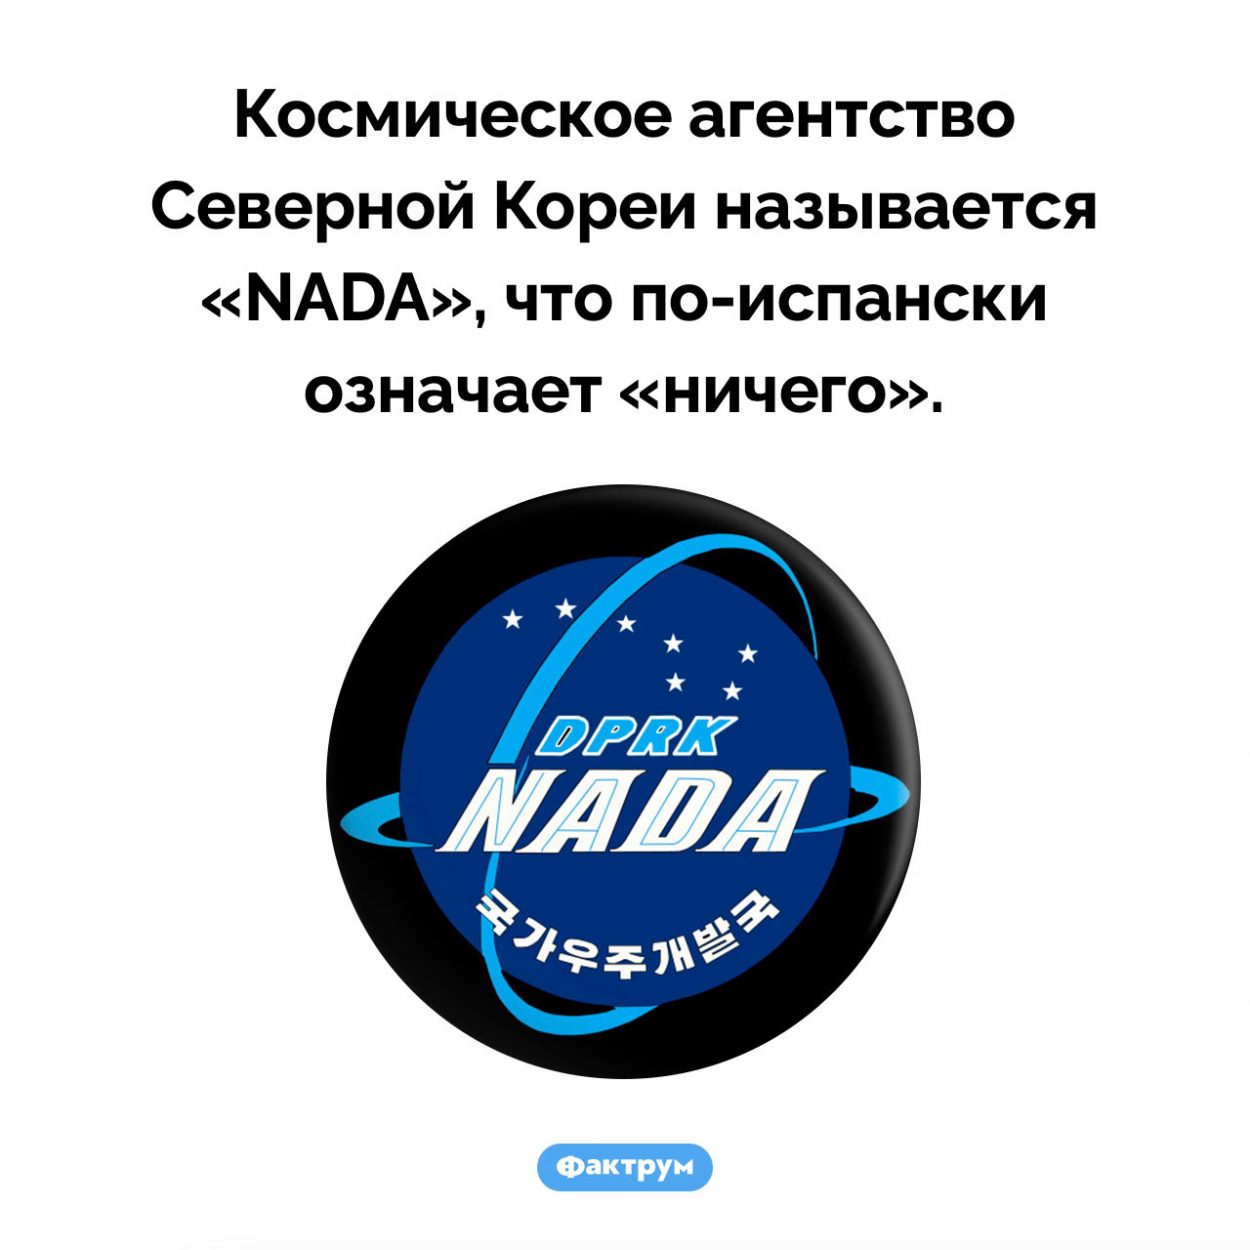 Северокорейское космическое агентство. Космическое агентство Северной Кореи называется «NADA», что по-испански означает «ничего».